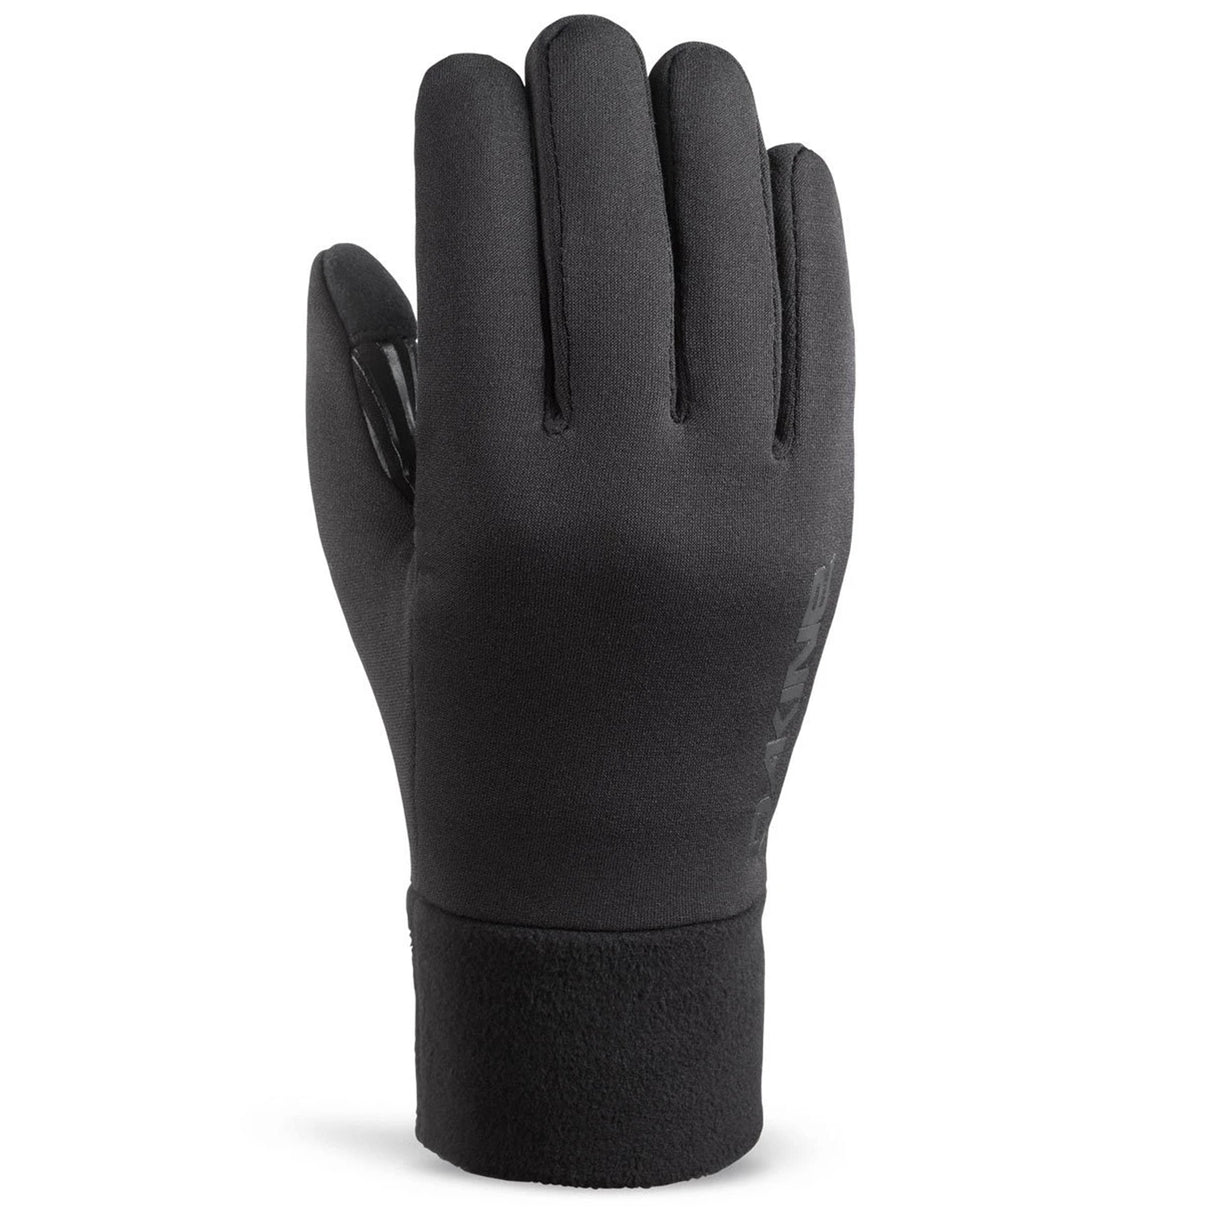 Storm Liner Glove